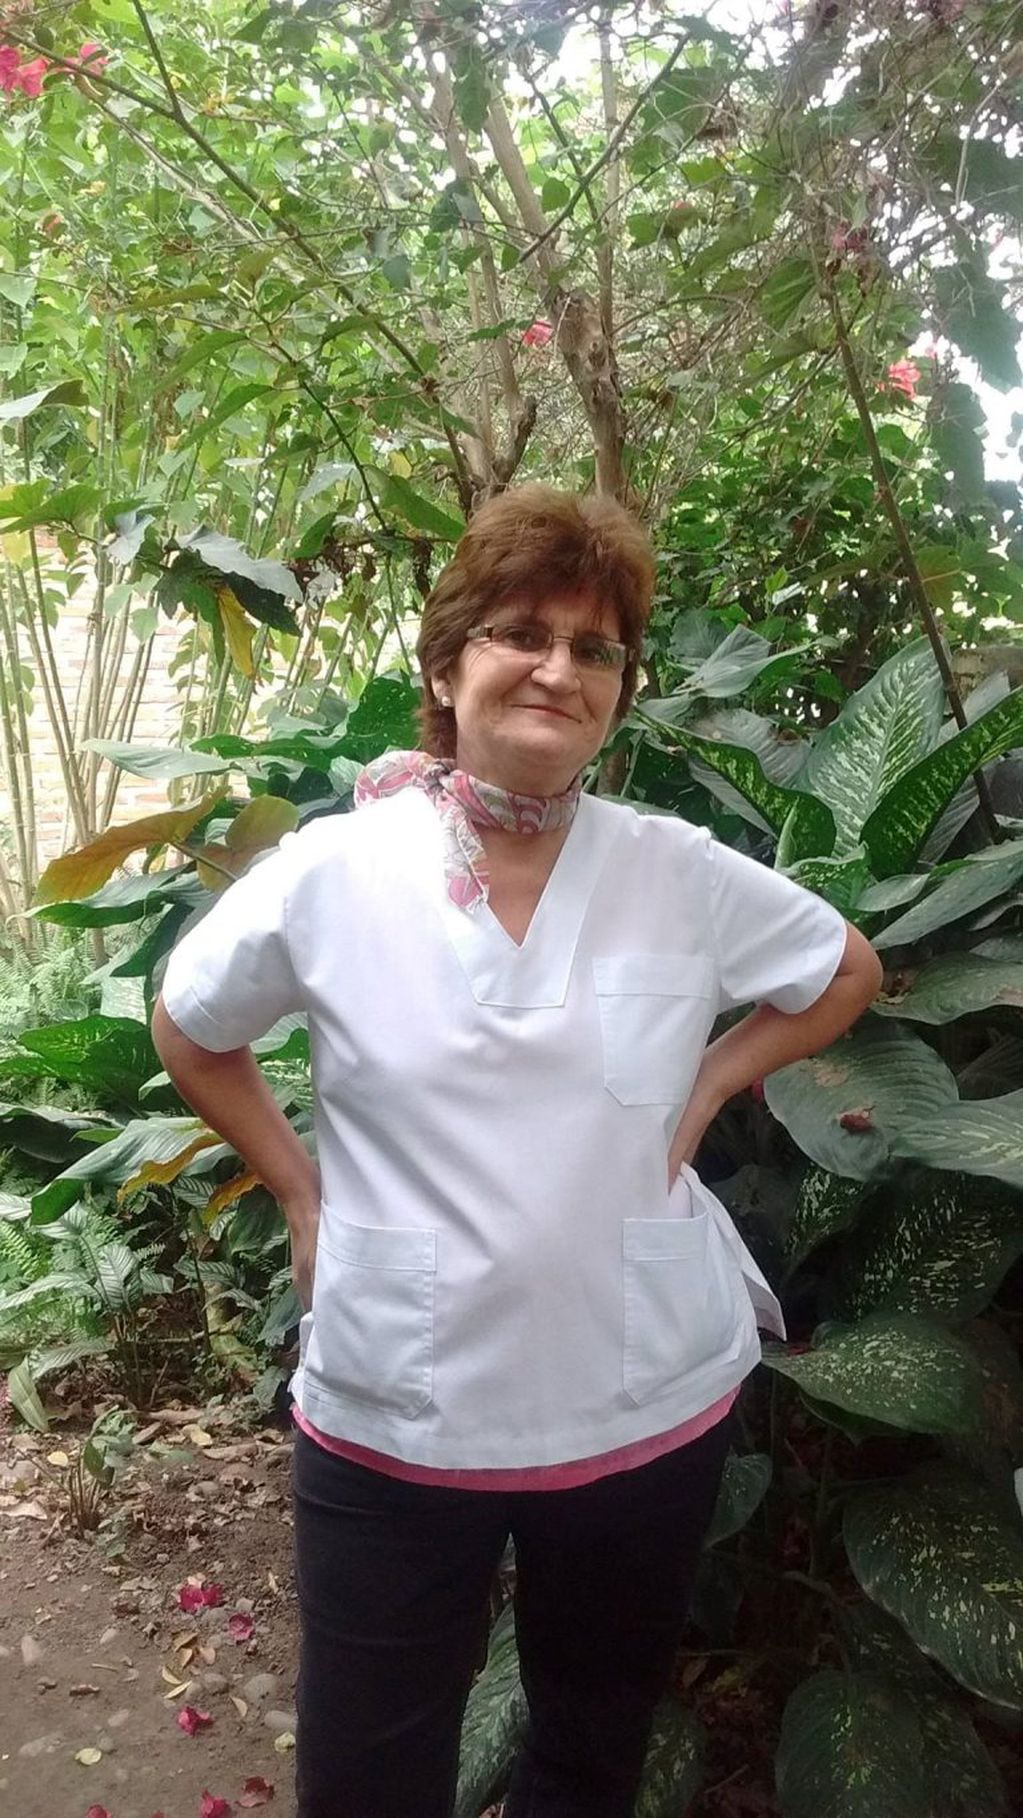 La diputada salteña señaló que durante la dictadura militar se trabajaba con más recursos en los hospitales (Facebook Ramona Riquelme)